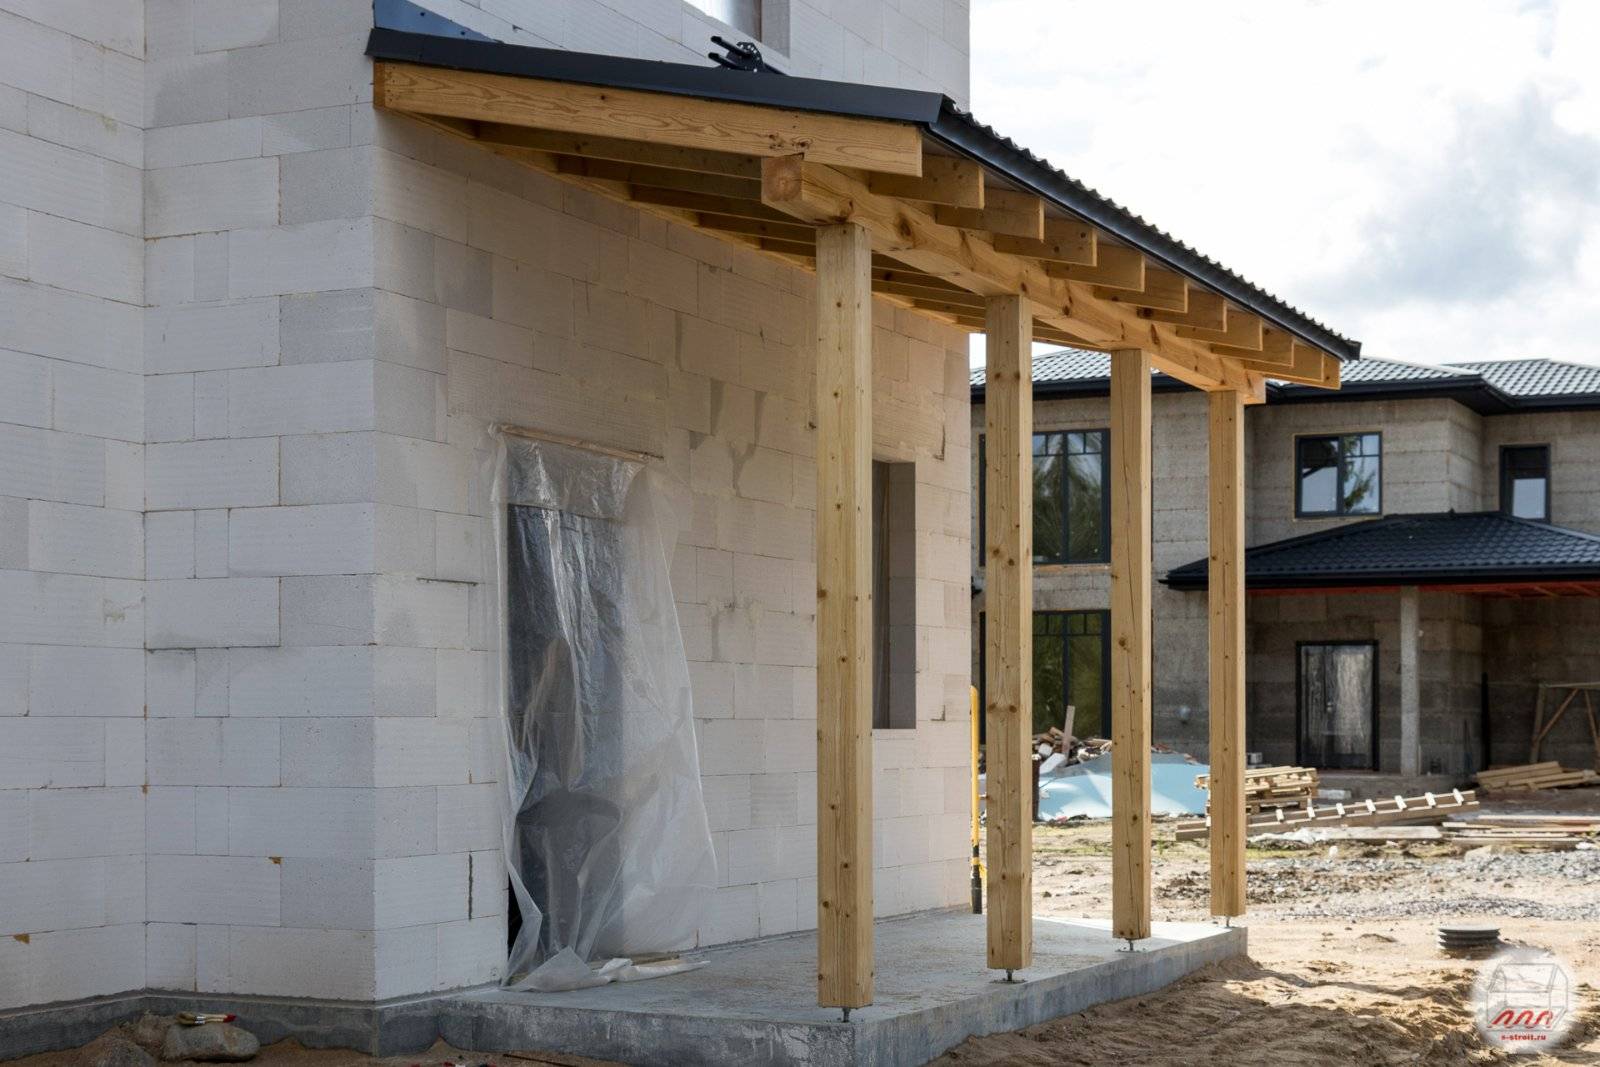 Строительство дома из газобетона своими руками – инструкция как построить коттедж из газобетонных блоков, отзывы владельцев + фото-видео